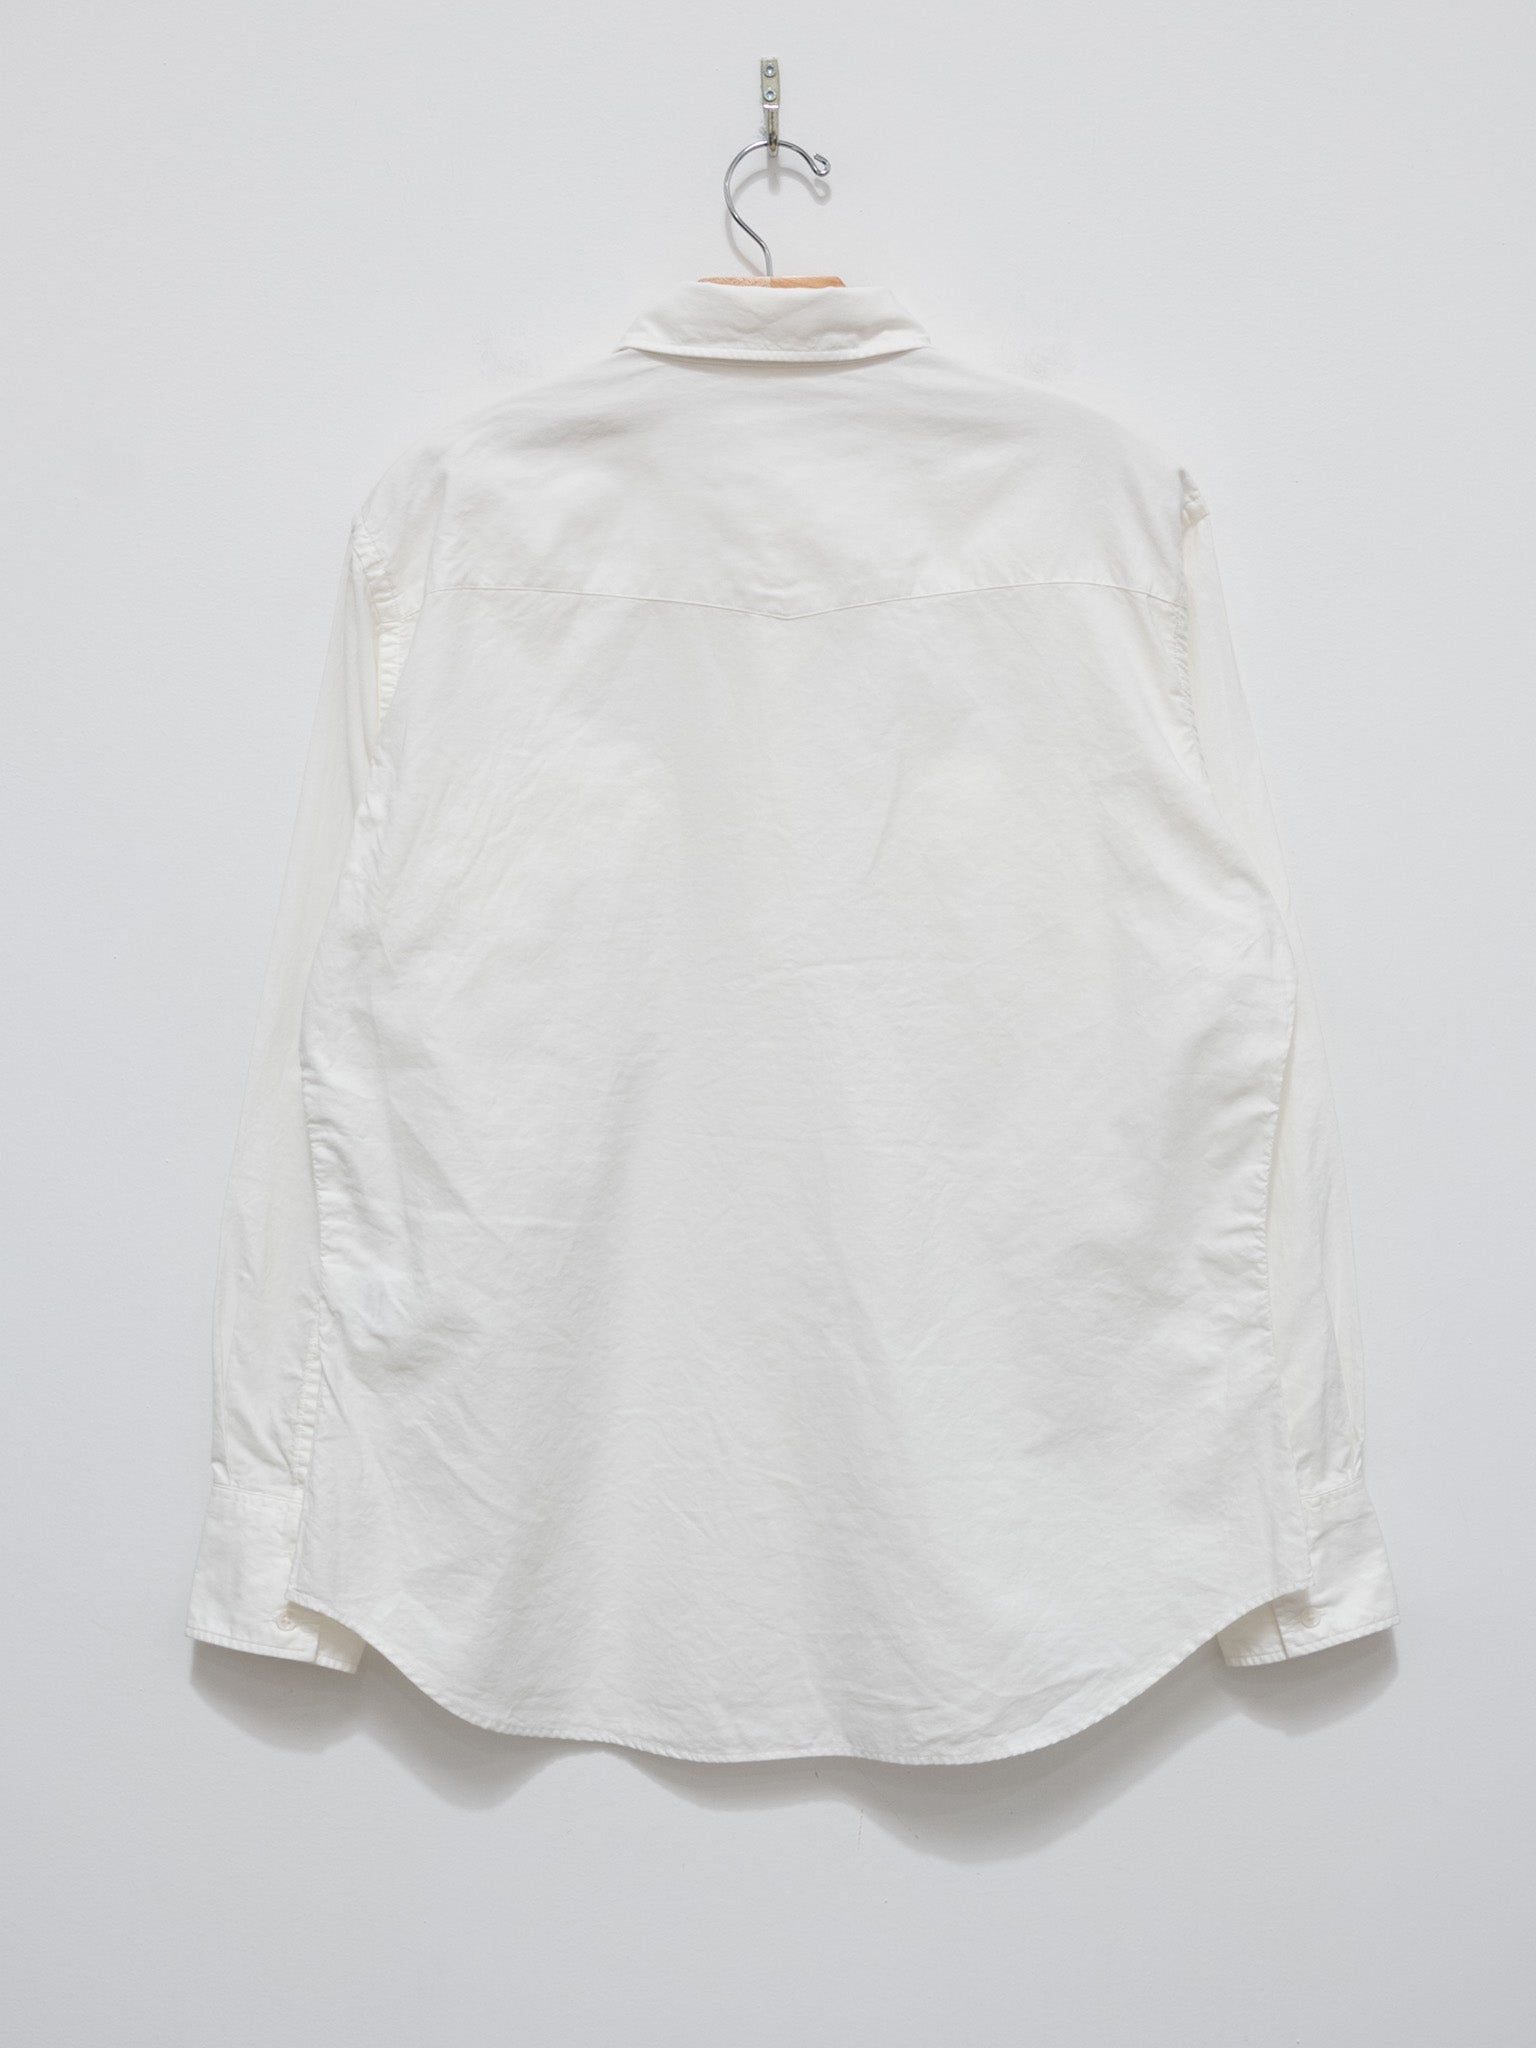 Namu Shop - S H Western Shirt - White